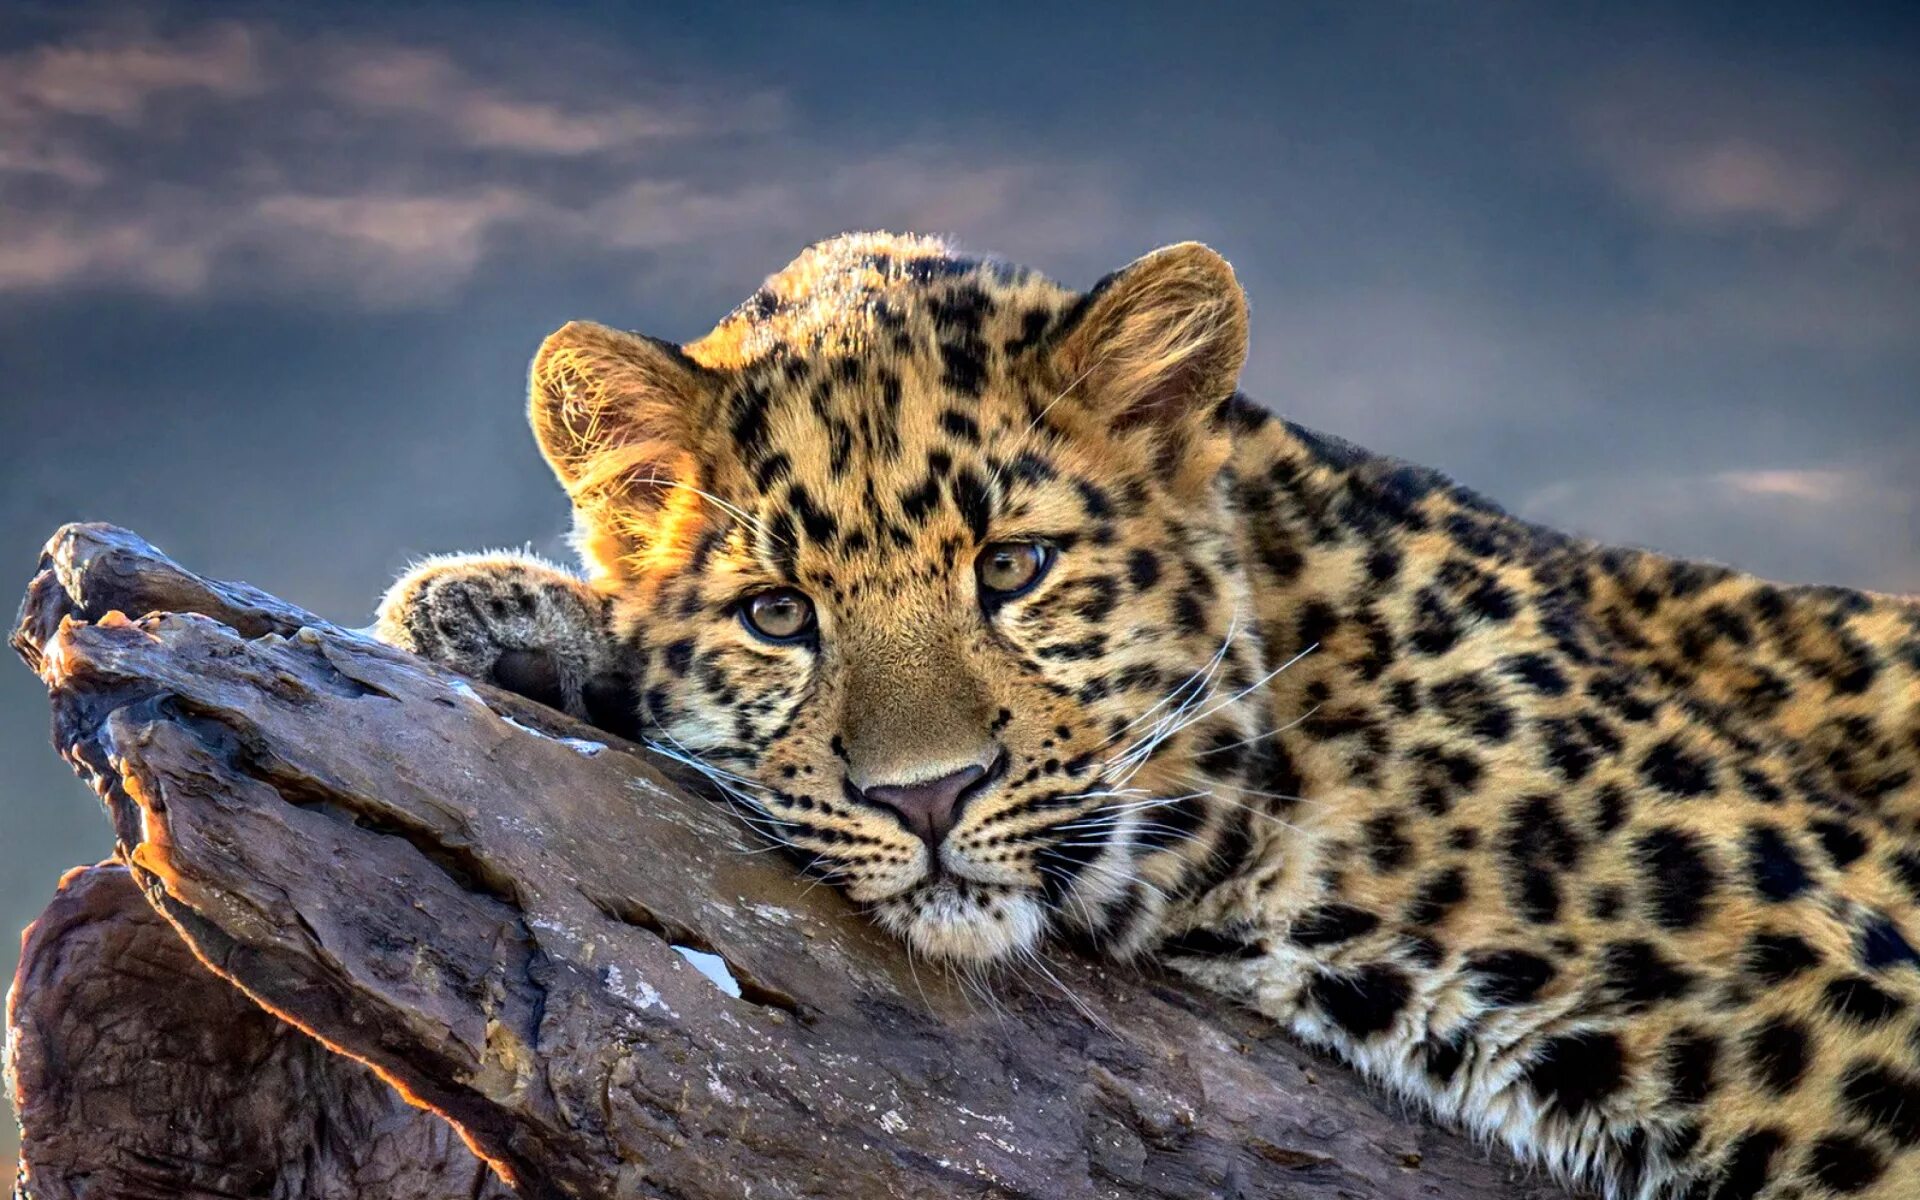 Обои на телефон на большой экран. Леопард снежный Барс Ягуар. Красивые животные. Красивый леопард. Красивые обои на рабочий стол.